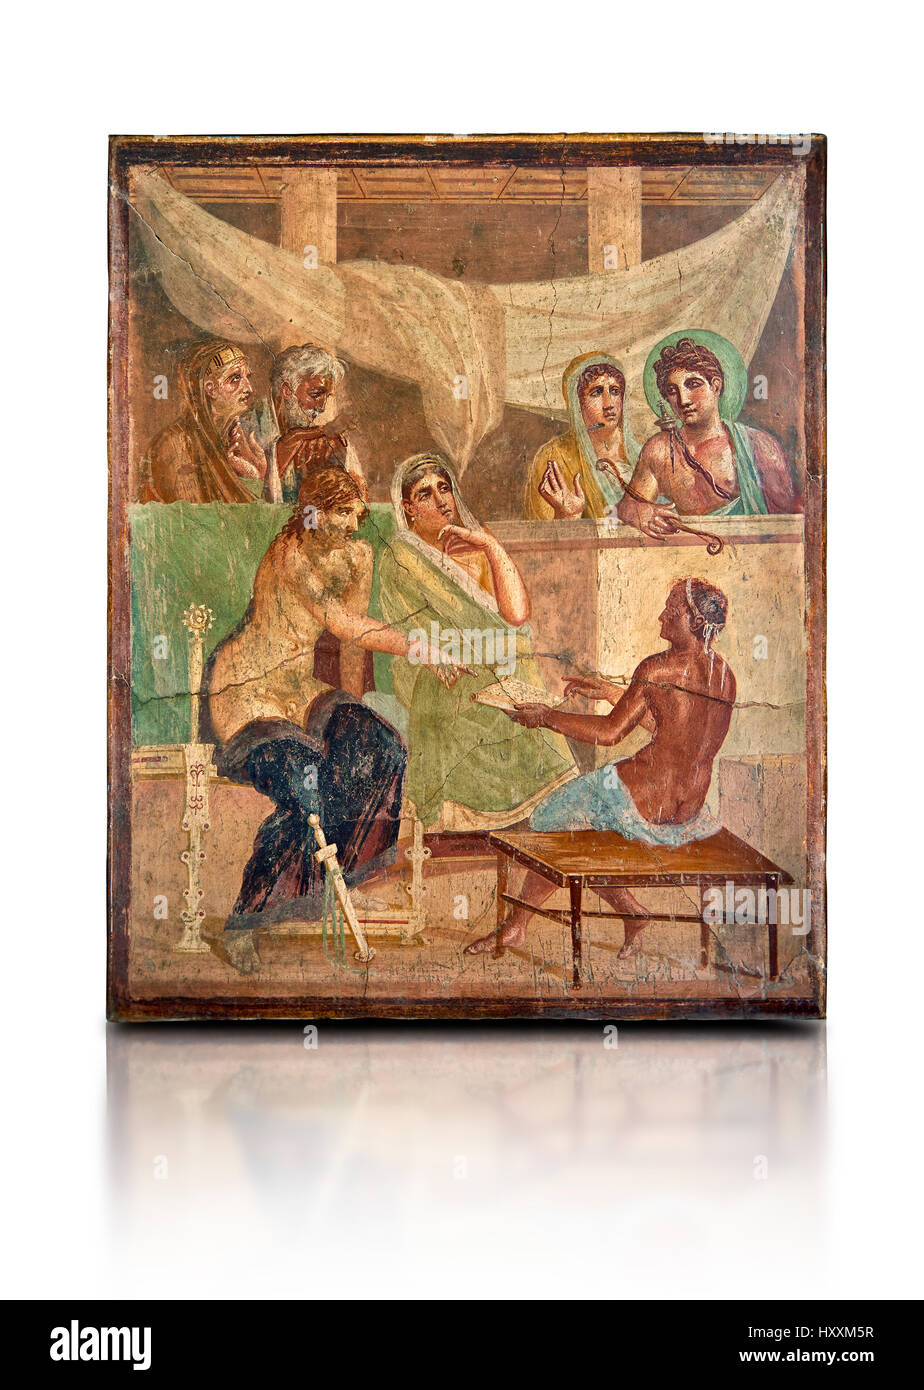 Fresco romano de pintura mural representando la historia de Admetus , Pompeya casa del poeta trágico , inv 9026, Nápoles, Museo Arqueológico Nacional. Foto de stock